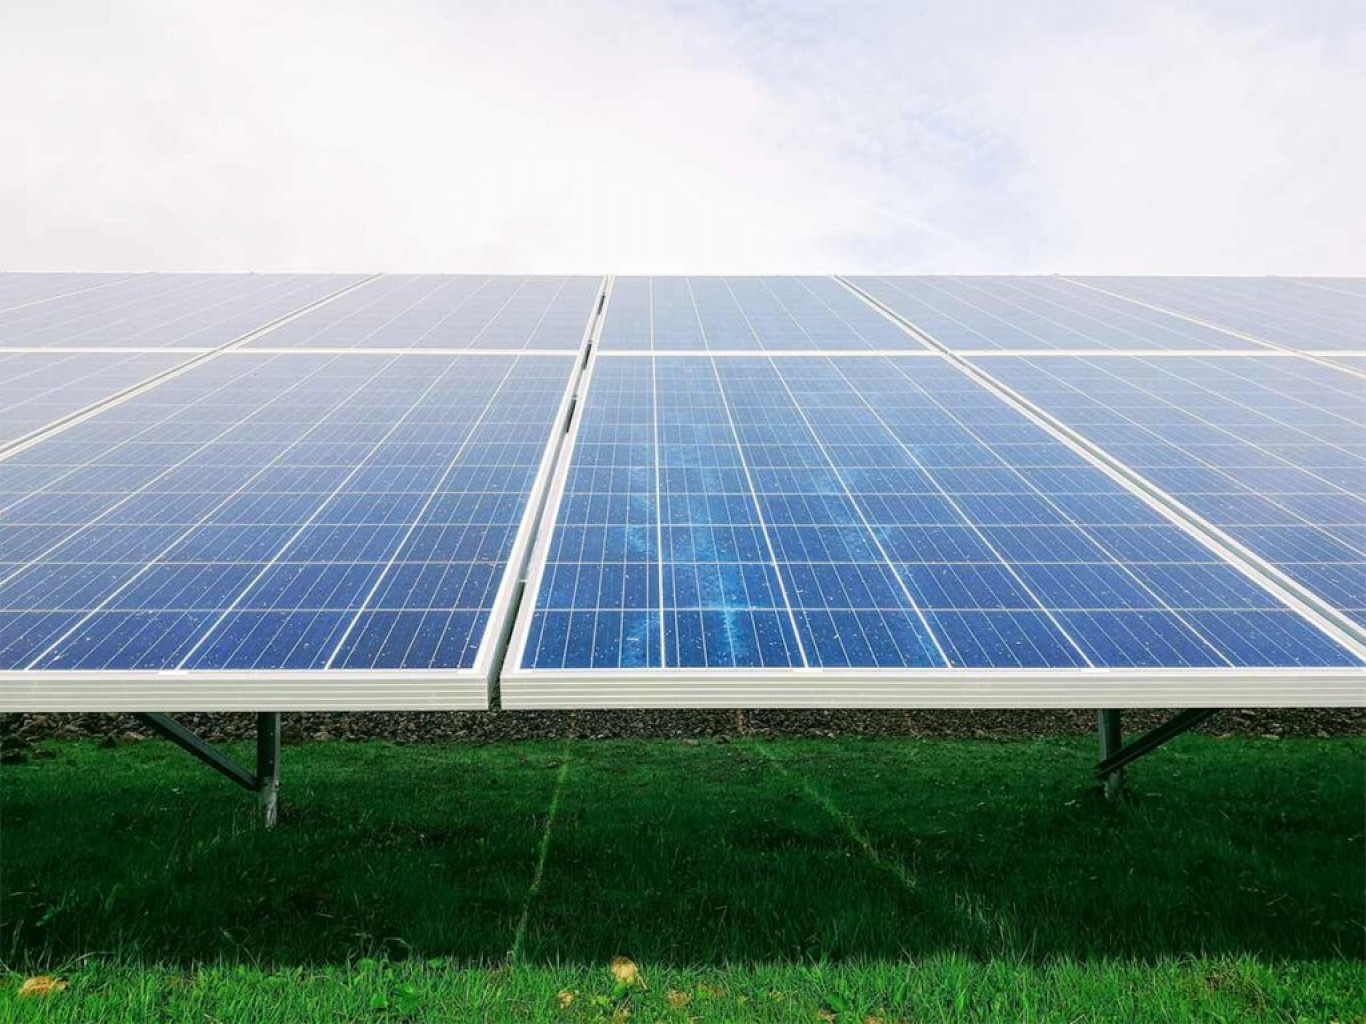 Päikeseenergia on üks jätkusuutlikumaid energiaallikaid.  Alates 2020. aastast on Evecon valmis ehitanud erinevaid päikeseparke koguvõimsusega 40 MW. Alates 202